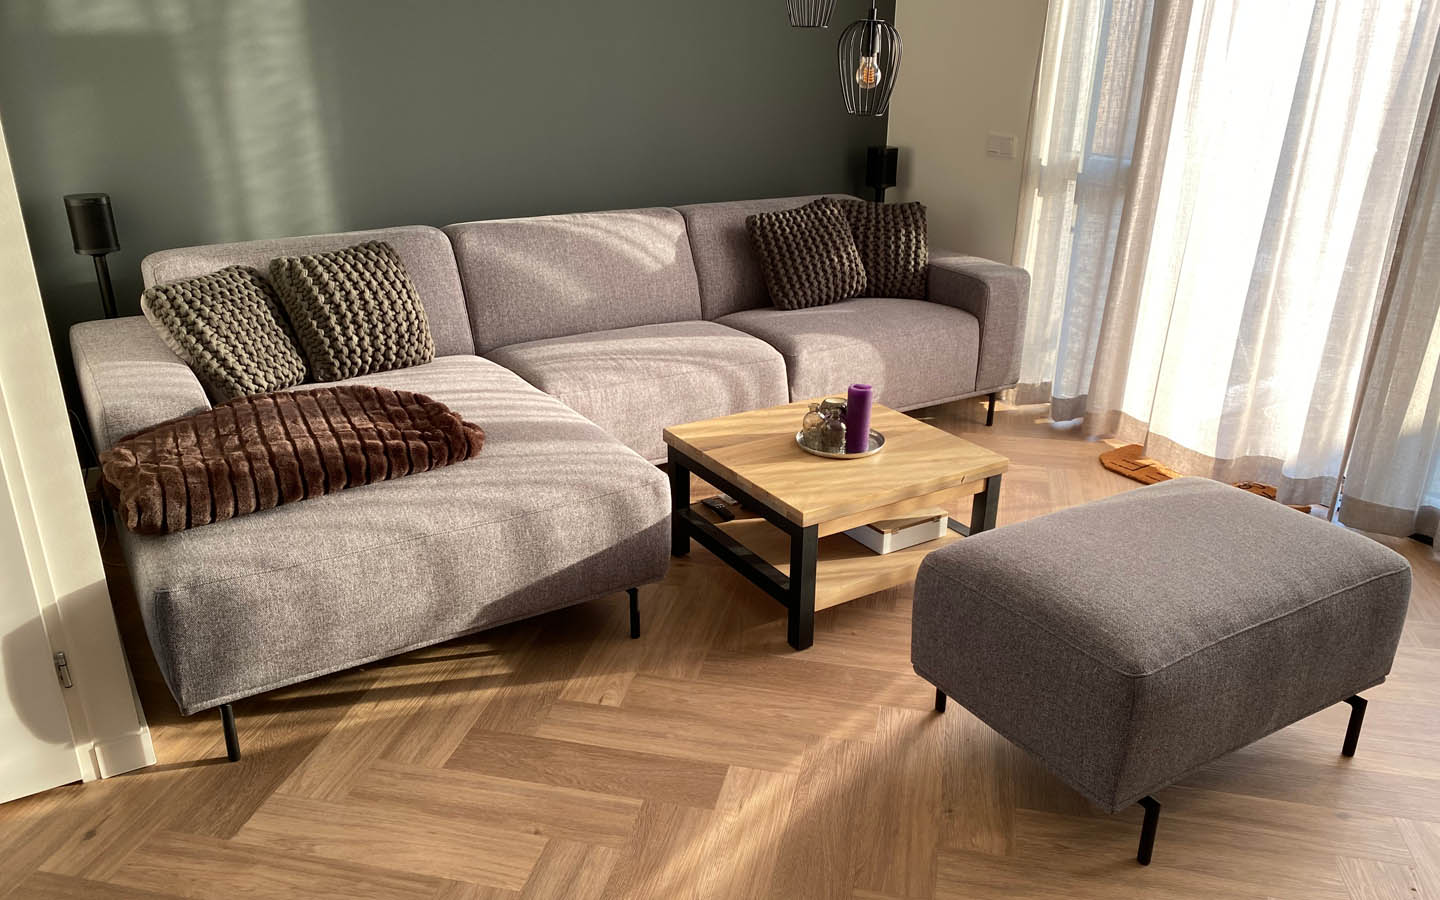 parquet flooring as living room floor design